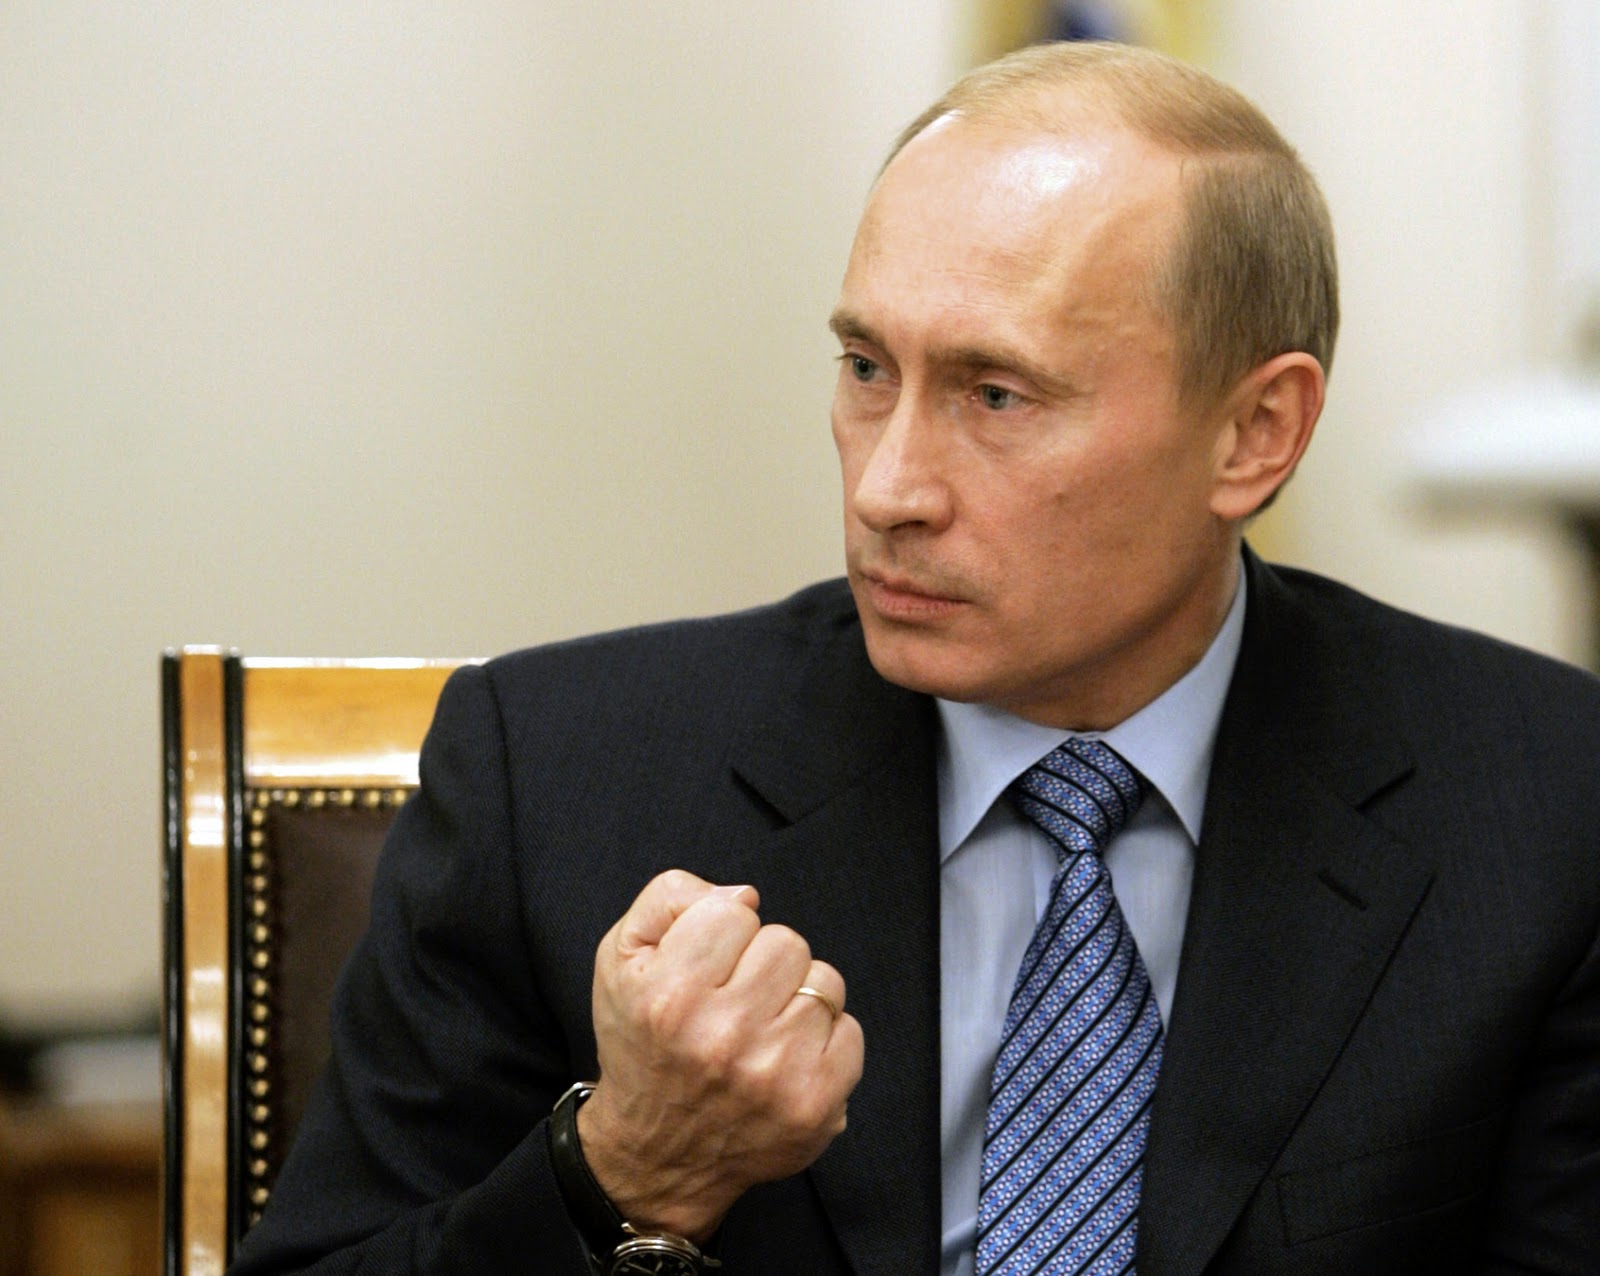 Putin: Emri verdim, saldırgan anında imha edilecek